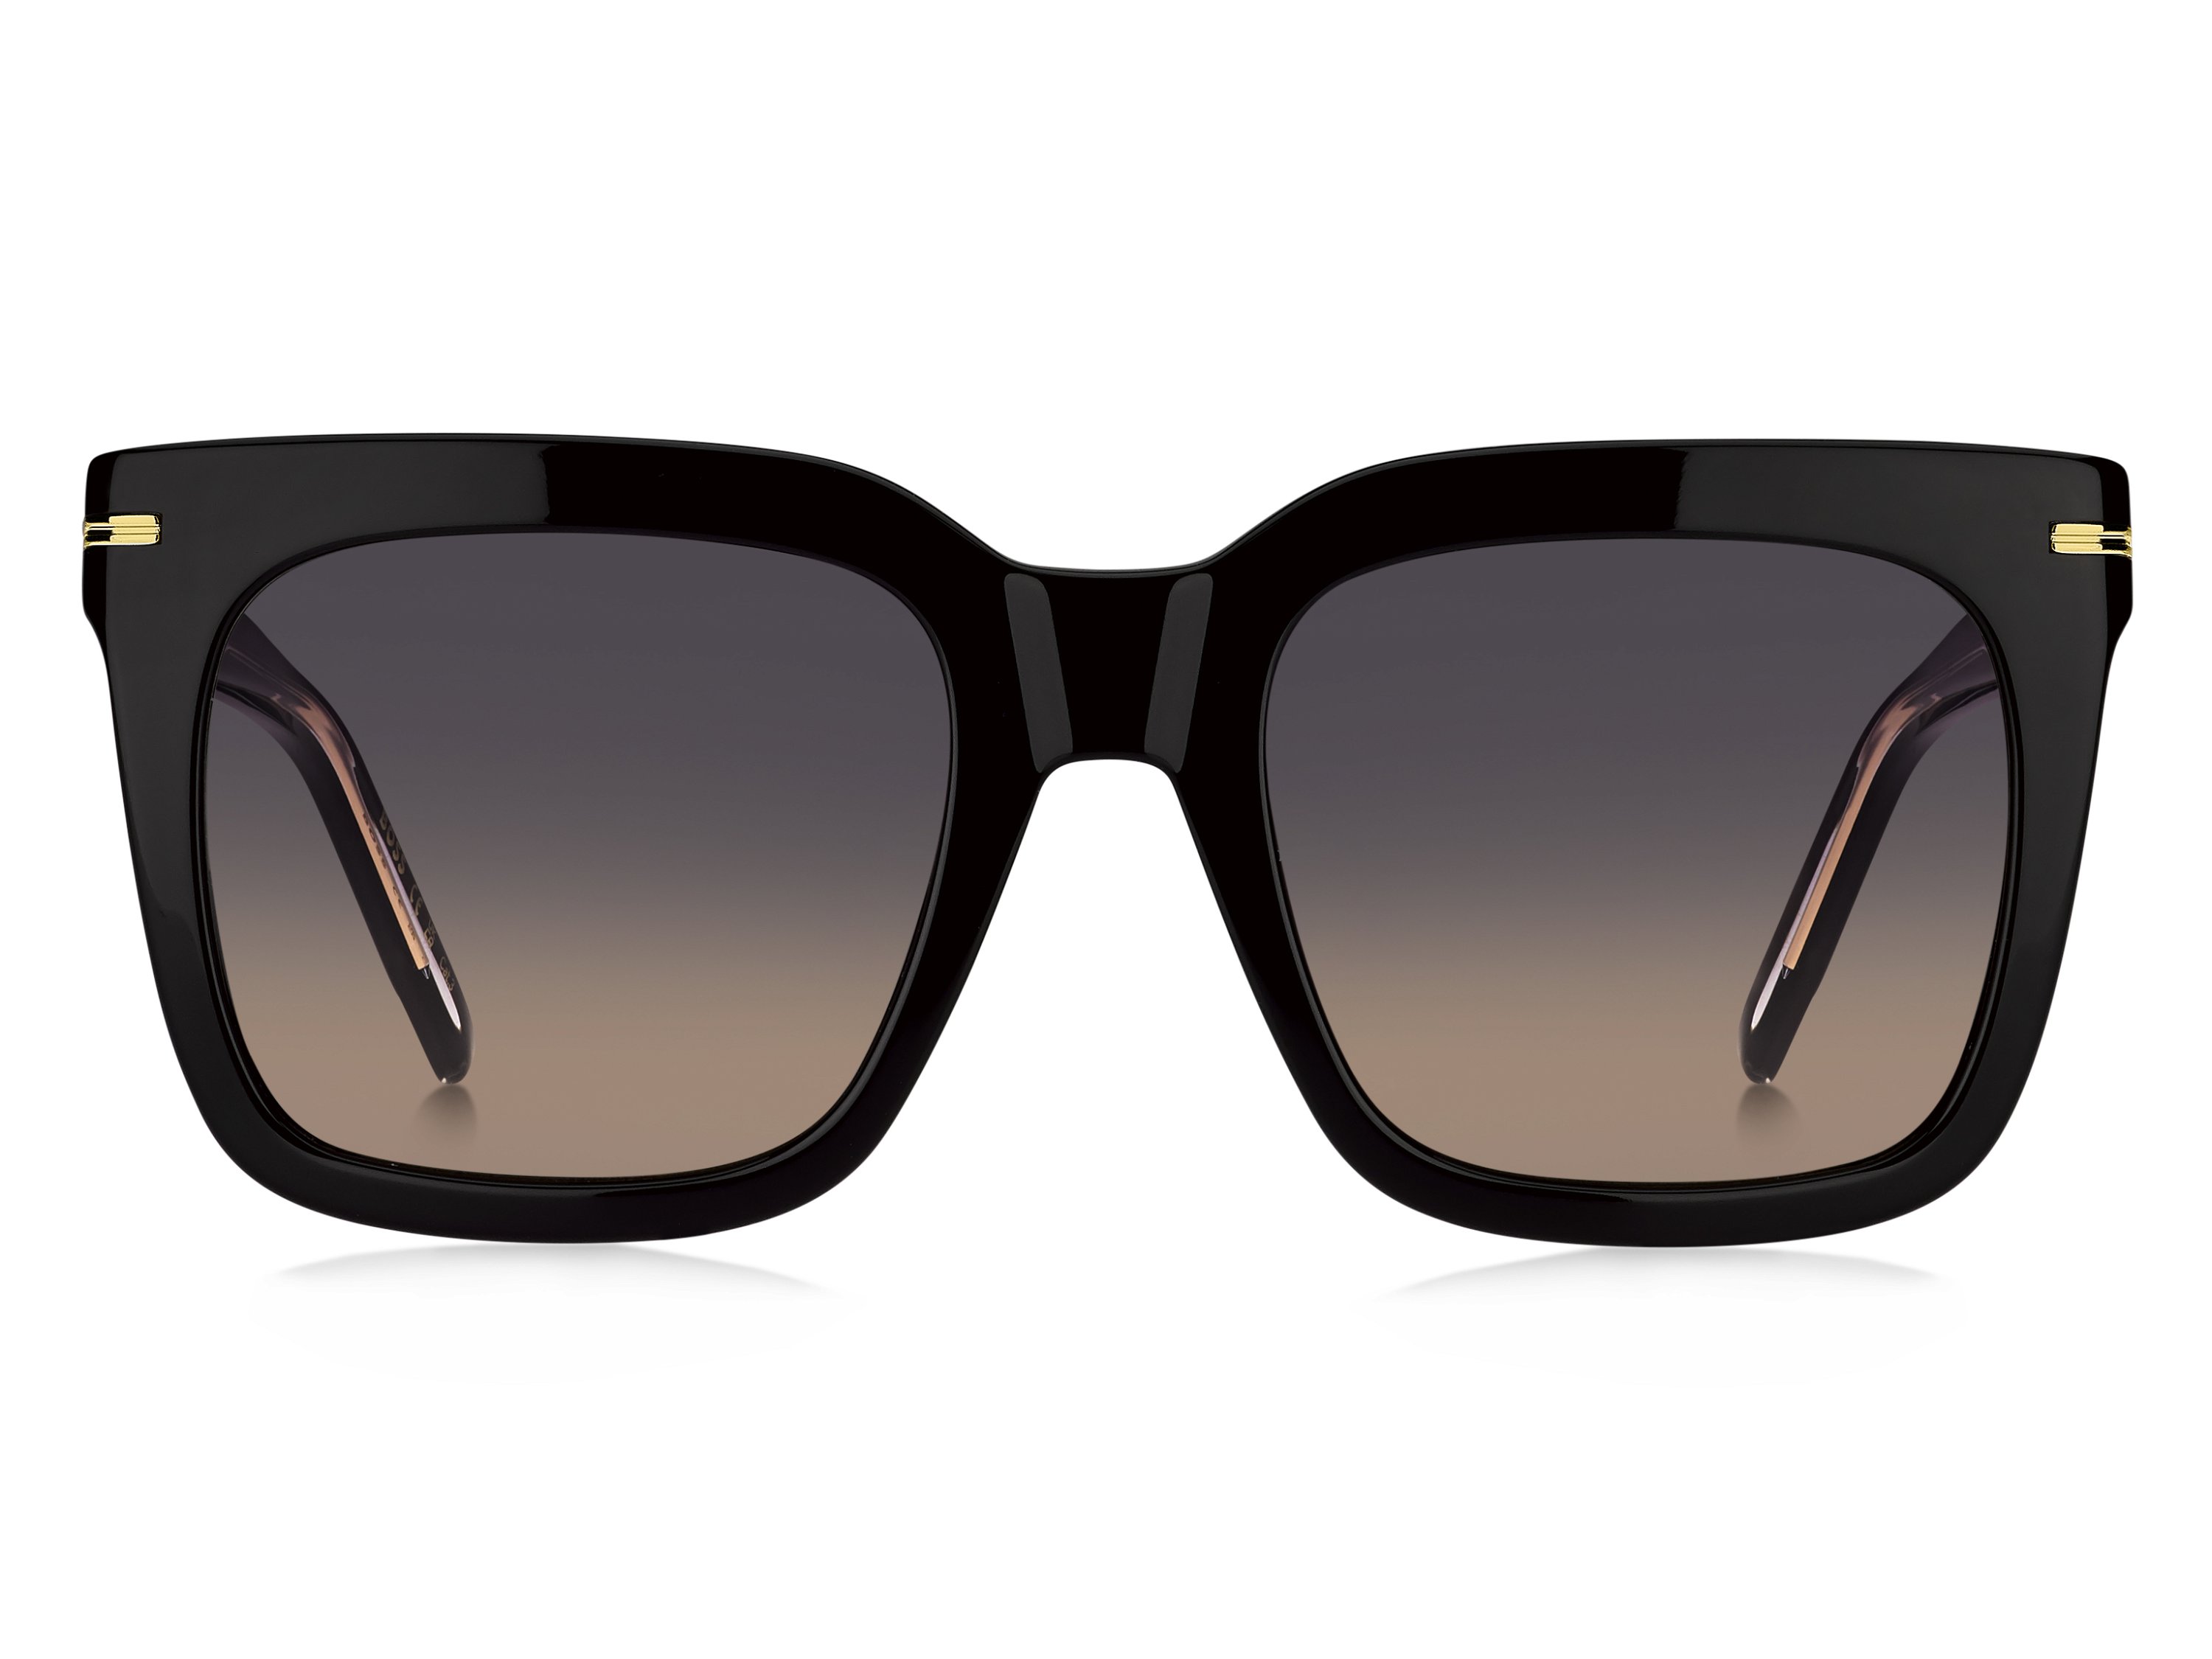 Das Bild zeigt die Sonnenbrille BOSS1656S 807 von der Marke BOSS in Schwarz.